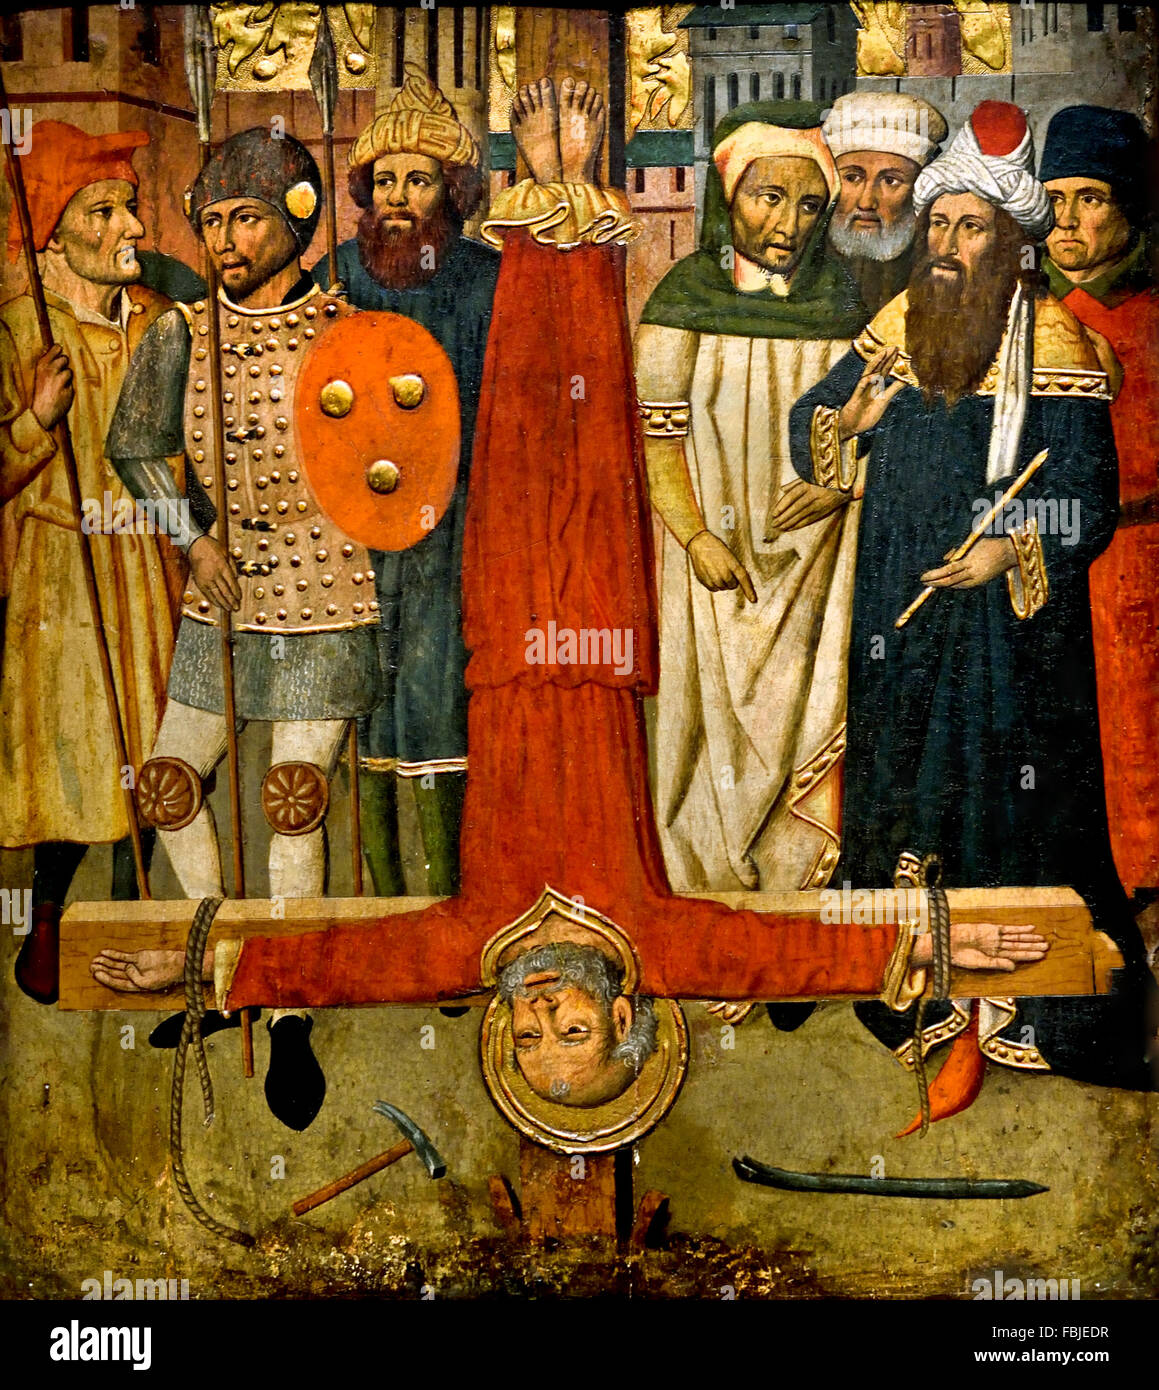 La Crocifissione di San Pietro di Jaume Huguet (1412 - 1492) Spagna medievale spagnola di arte gotica Foto Stock